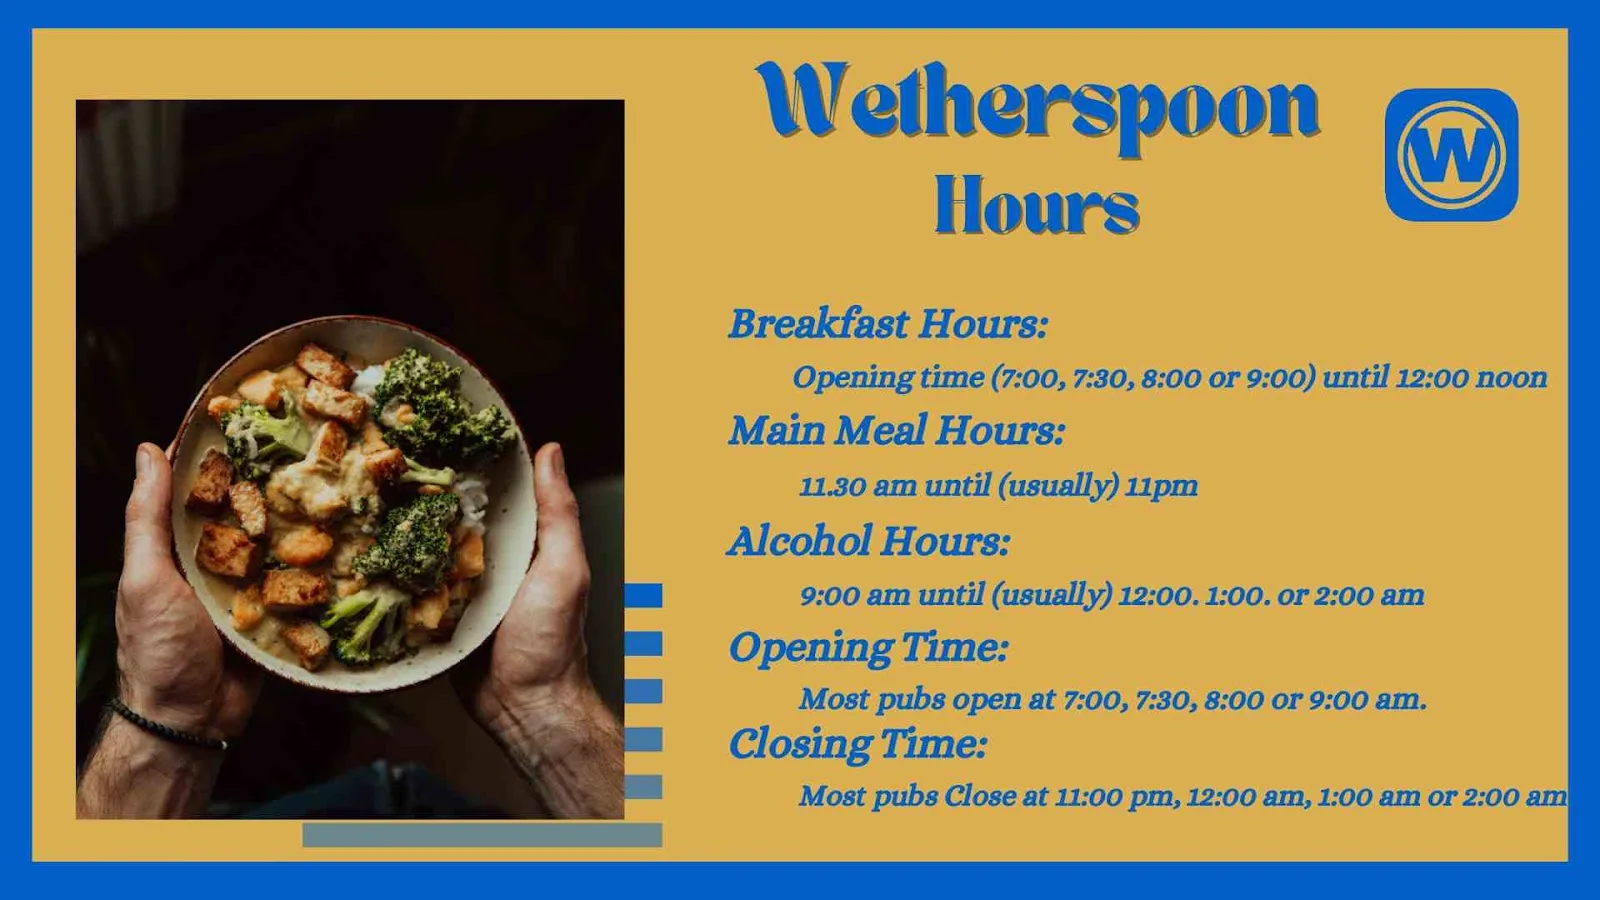 Wetherspoons hours – Breakfast, Lunch timings